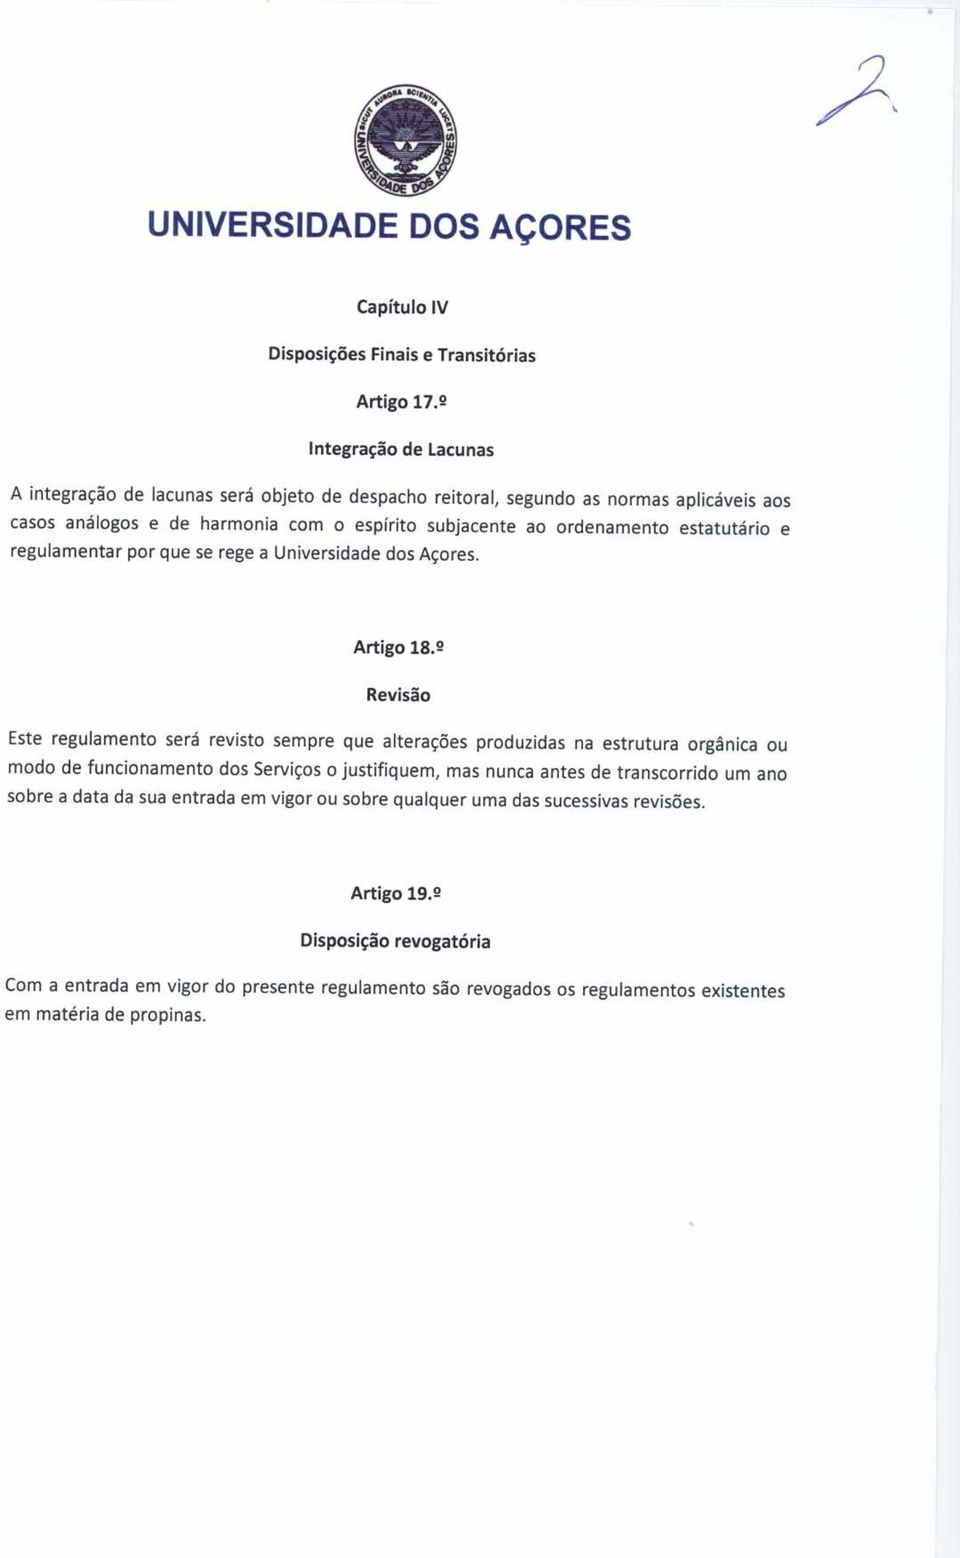 estatutário e regulamentar por que se rege a Universidade dos Açores. Artigo 18.